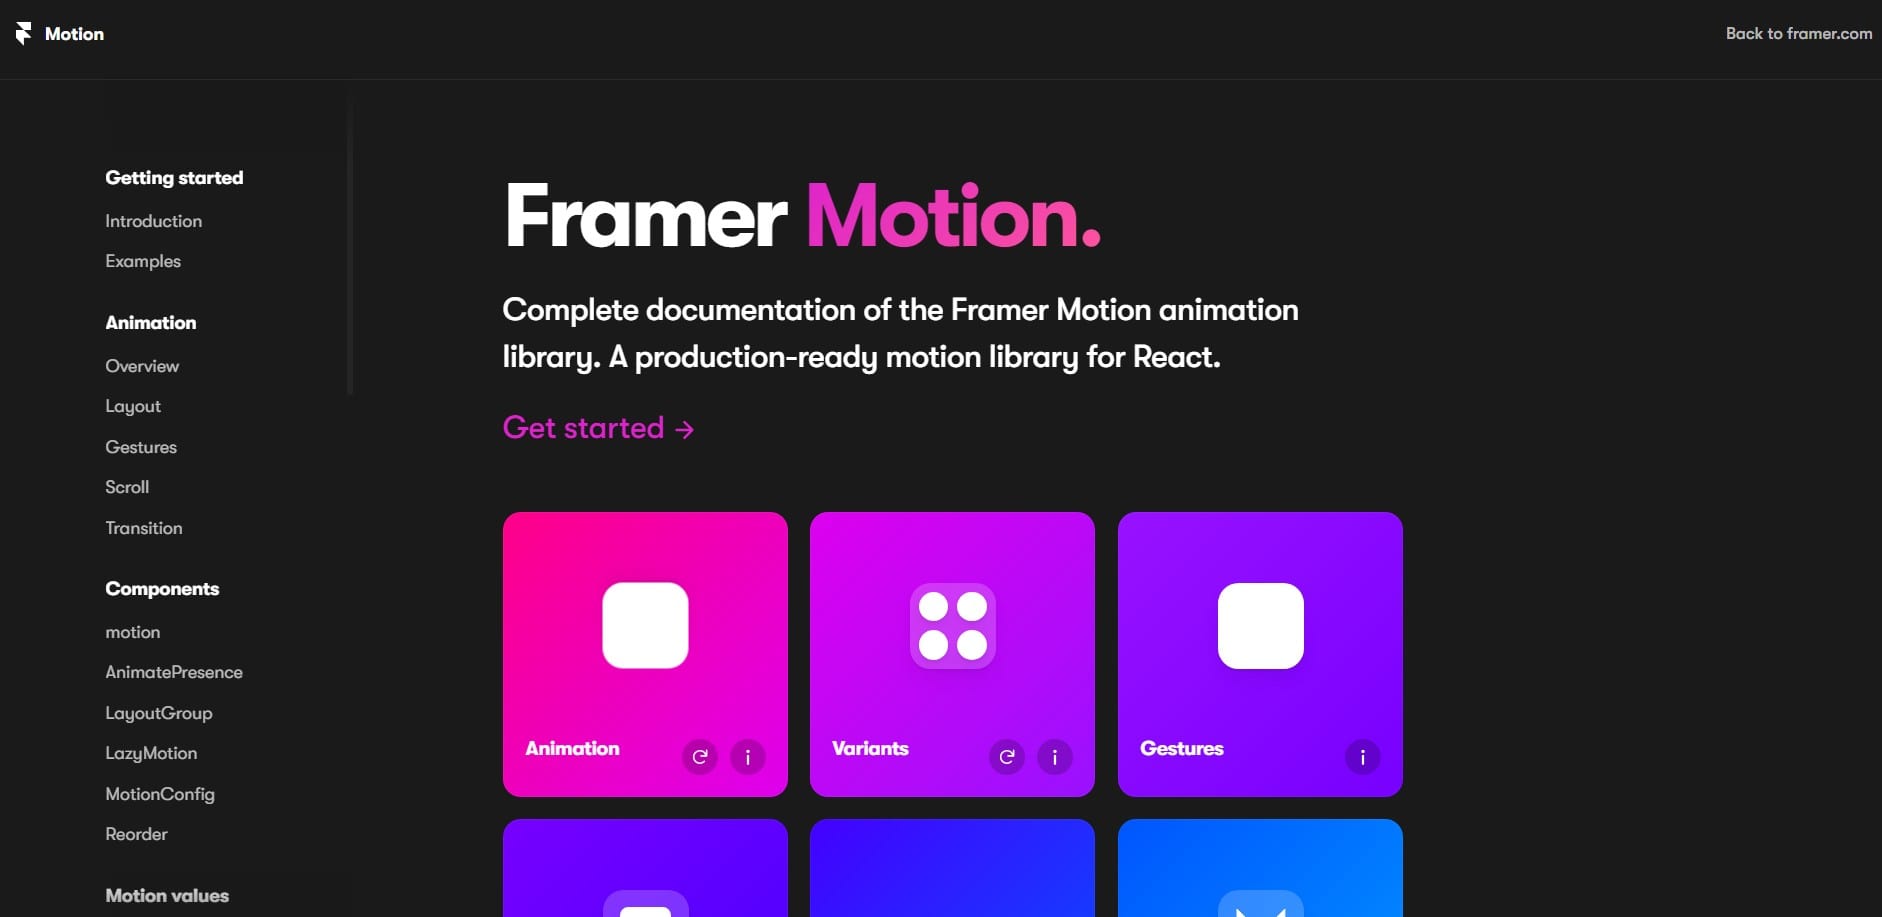 framer.com